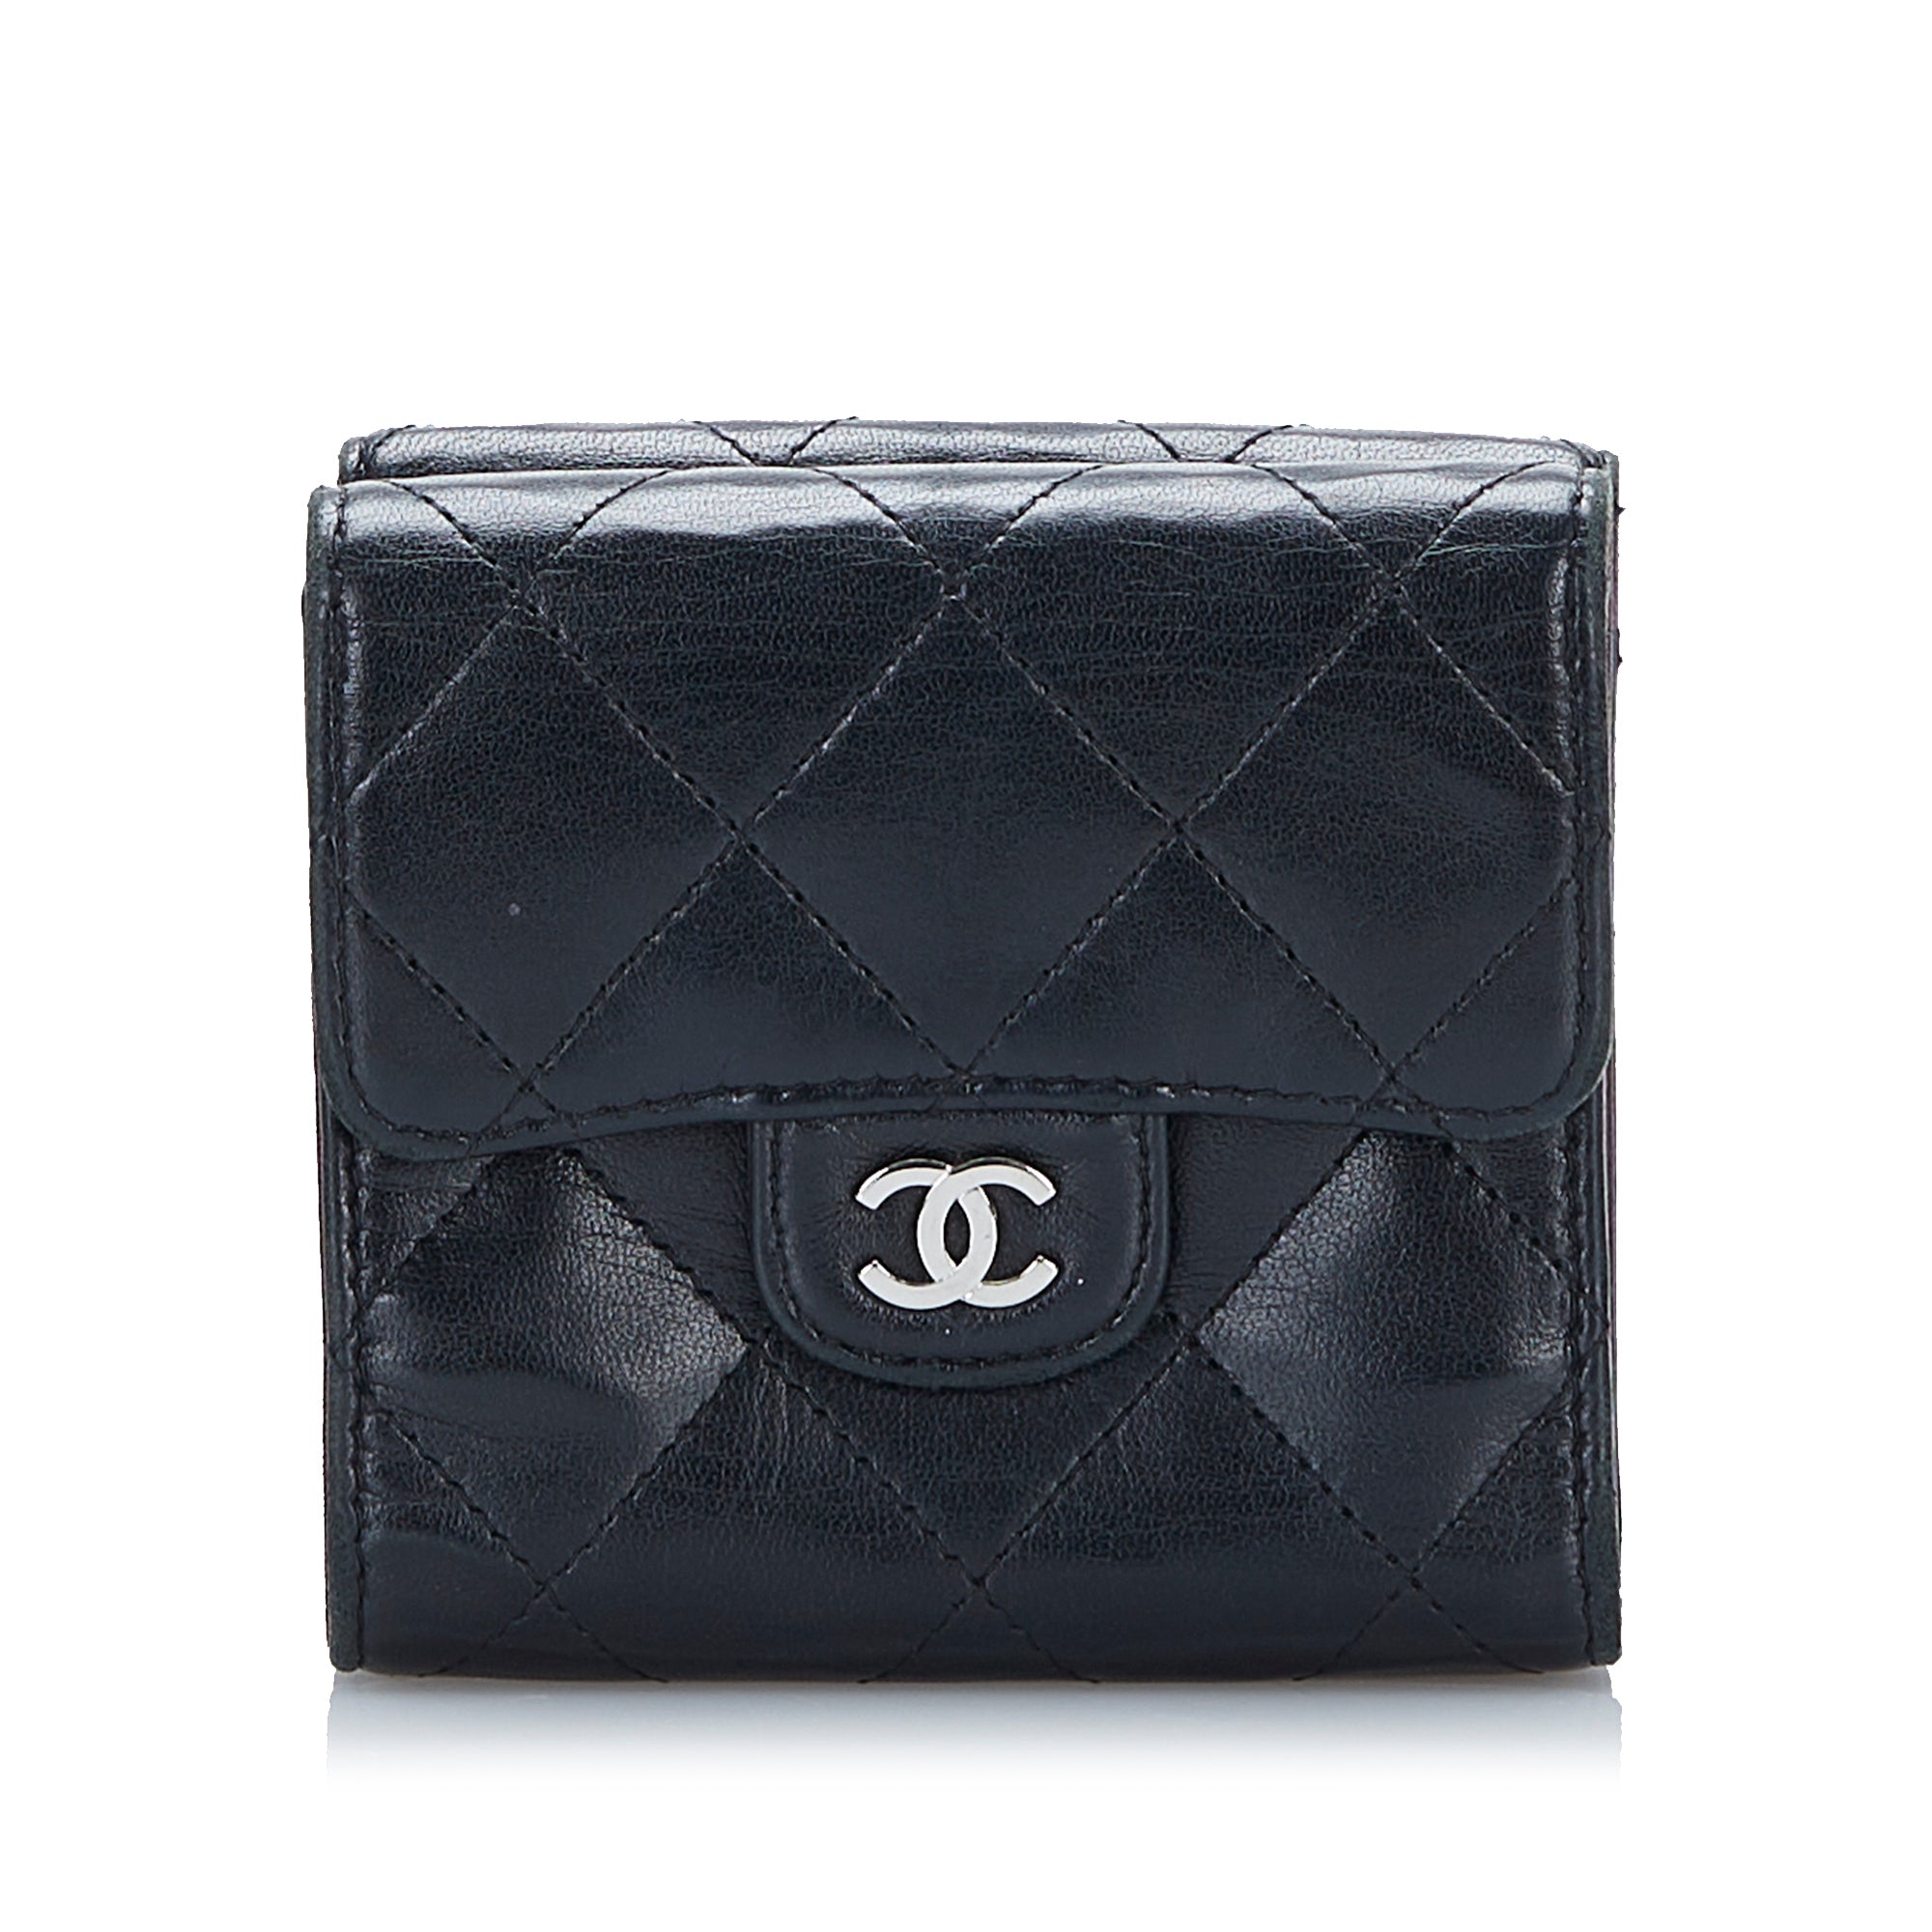 Black Chanel CC Flap Lambskin Wallet, Cra-wallonieShops Revival